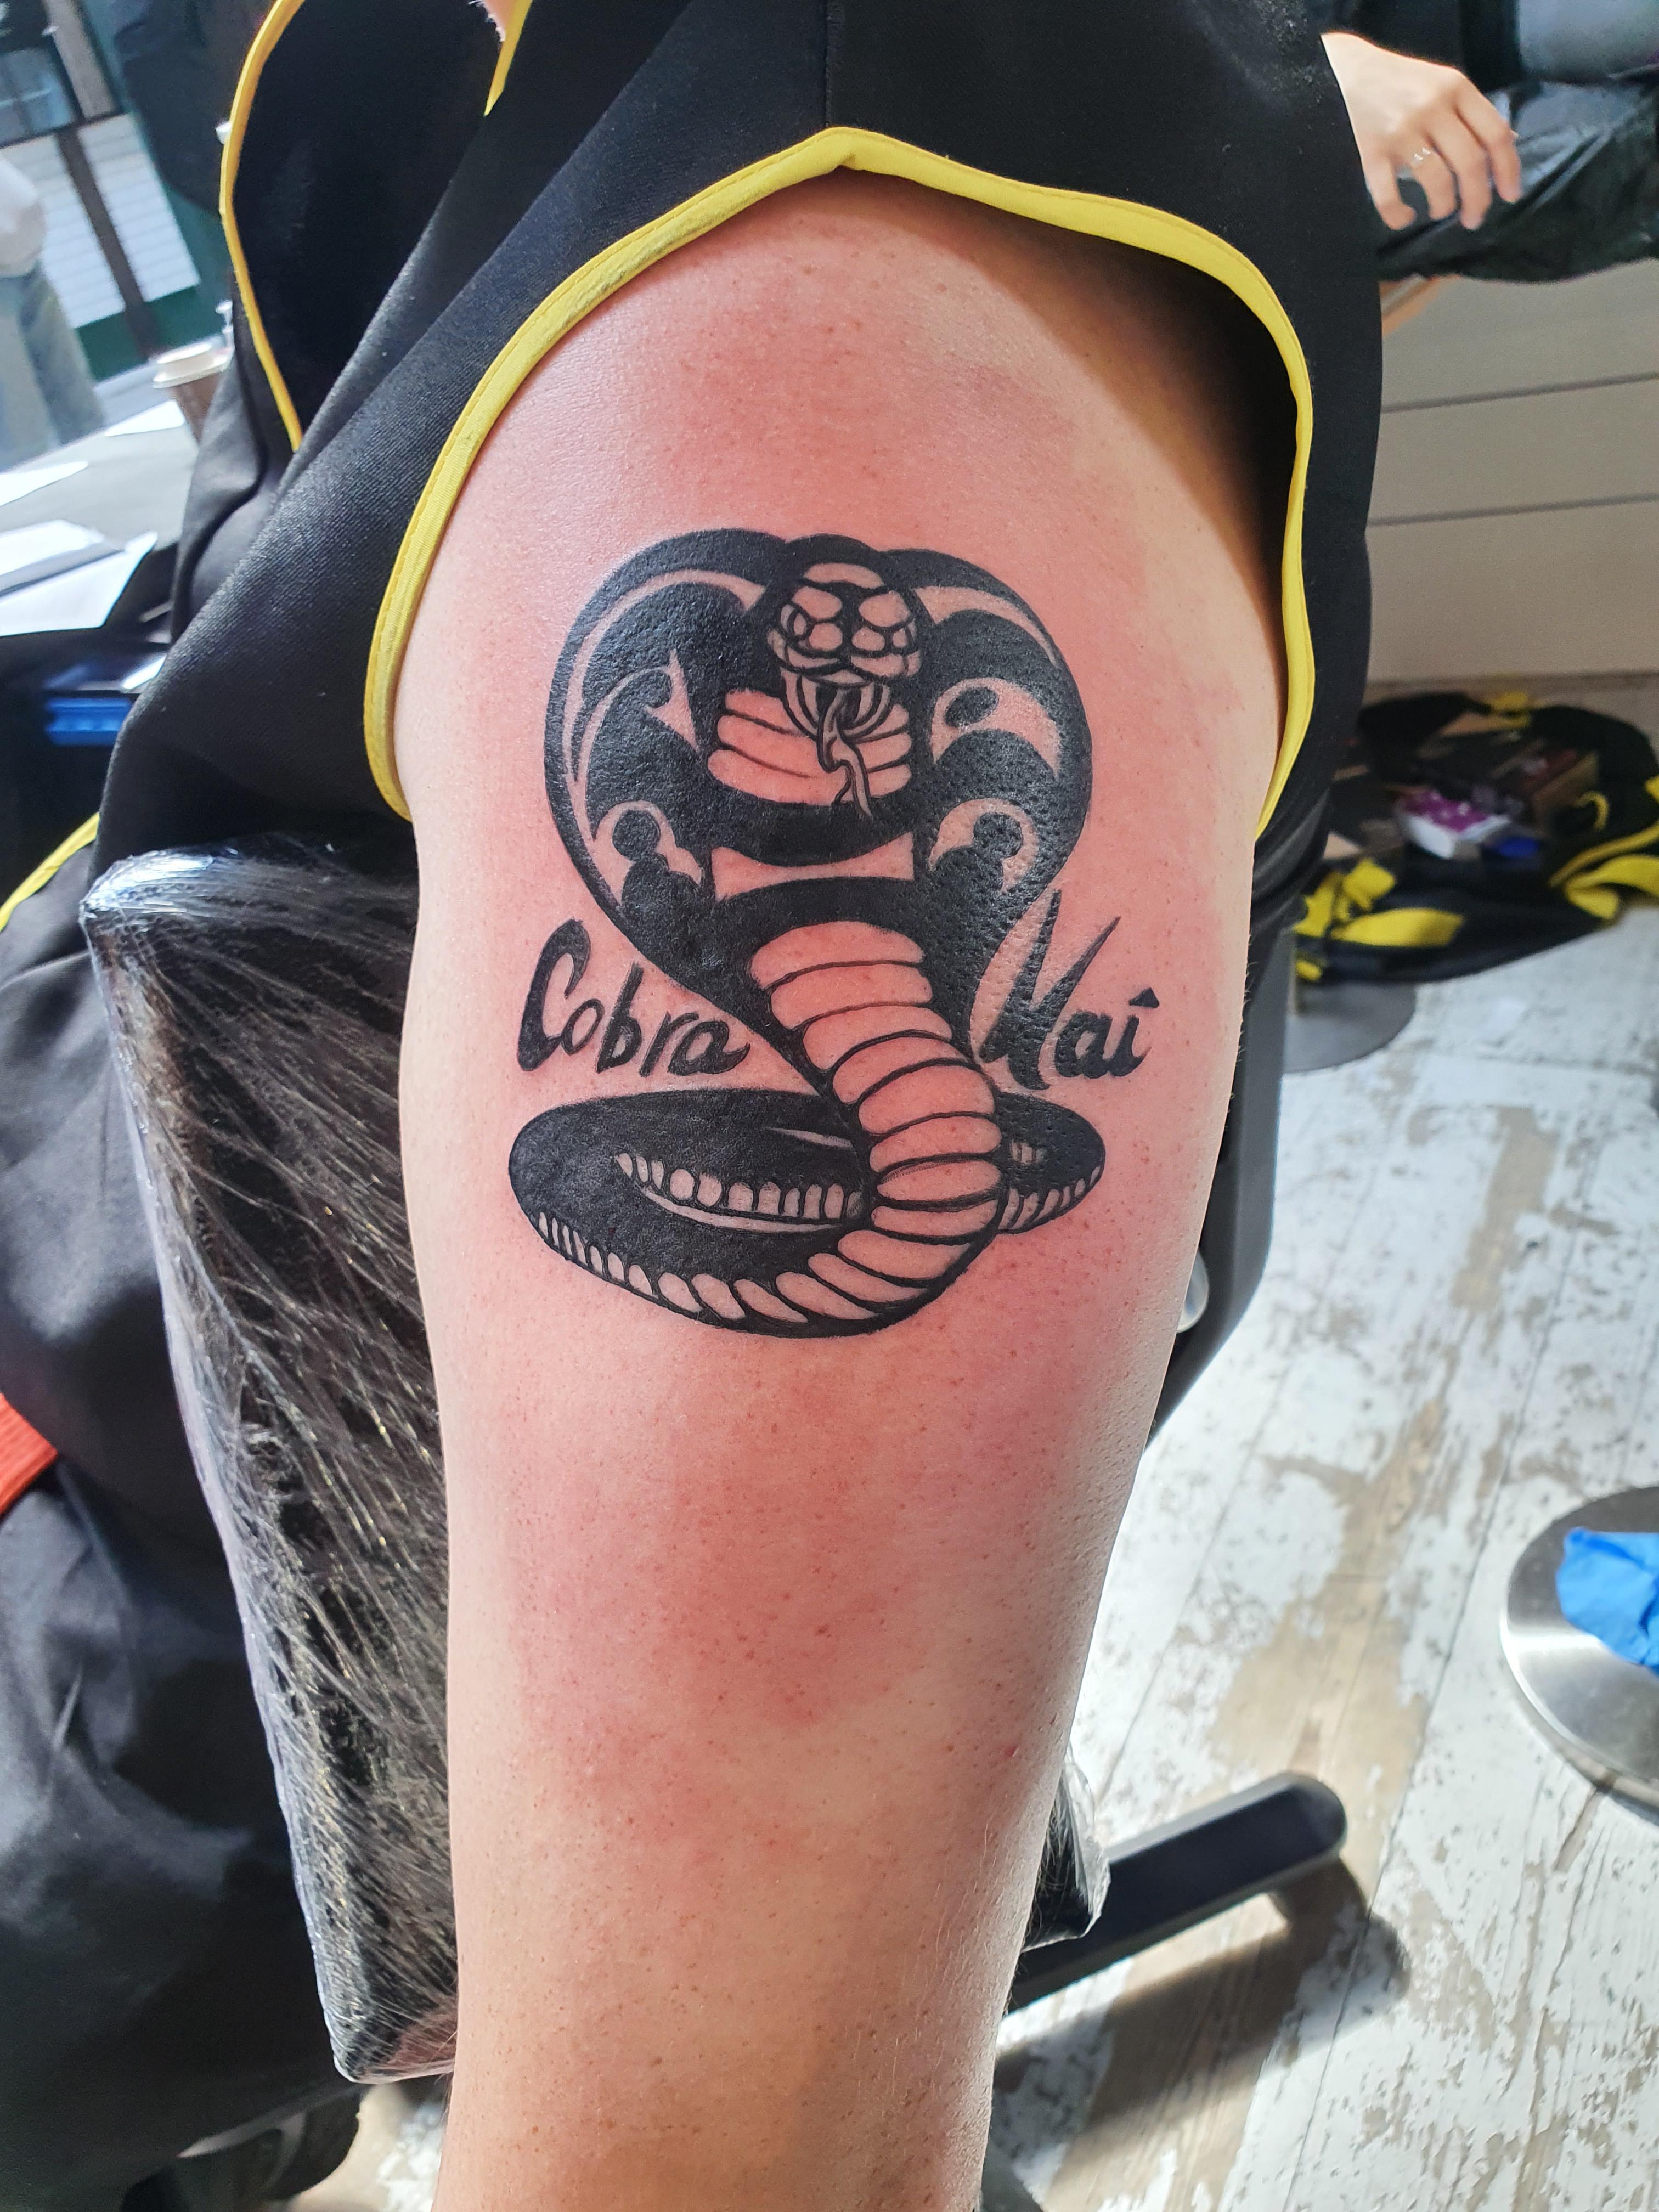 cobra kai tattoo